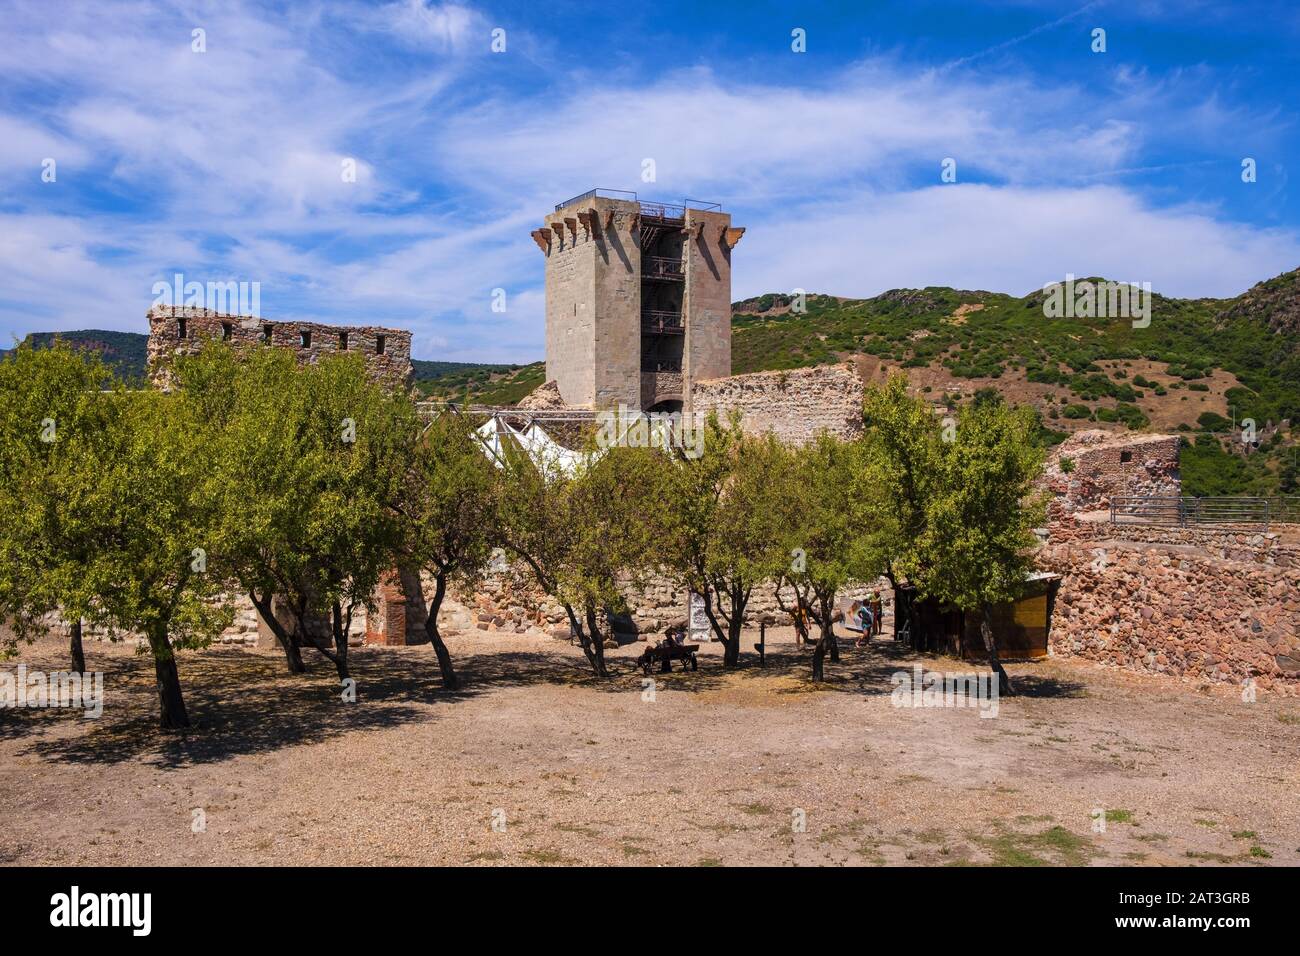 Bosa, Sardinien/Italien - 2018/08/13: Hauptturm - Torre Maestra - der Burg Malaspina, auch bekannt als Schloss von Serravalle, mit monumentalen historischen Verteidigungsmauern und Befestigungsanlage Stockfoto